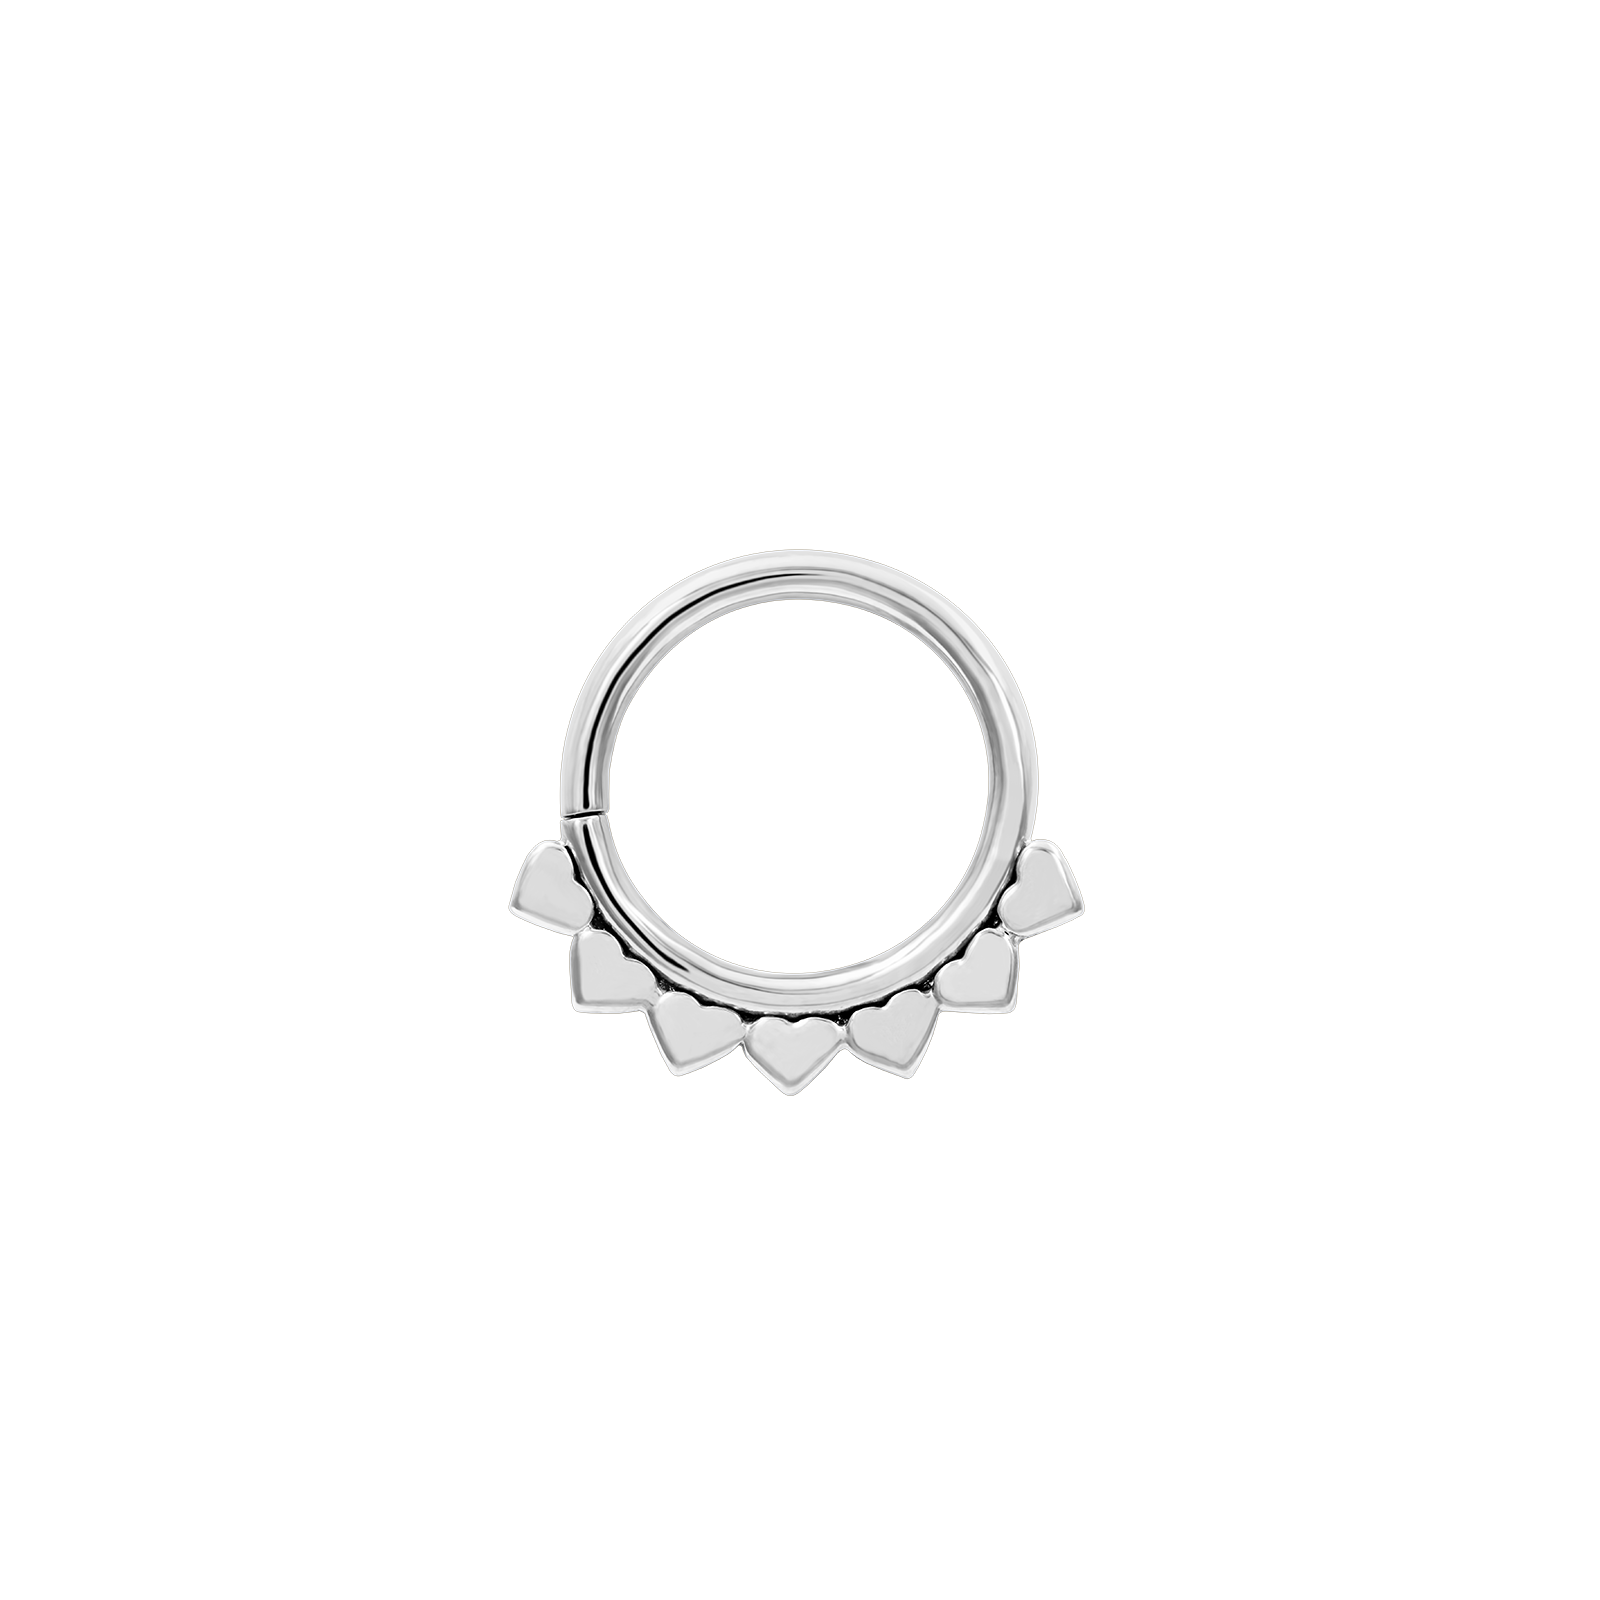 Jiya Seam Ring in 14k White Gold by LeRoi